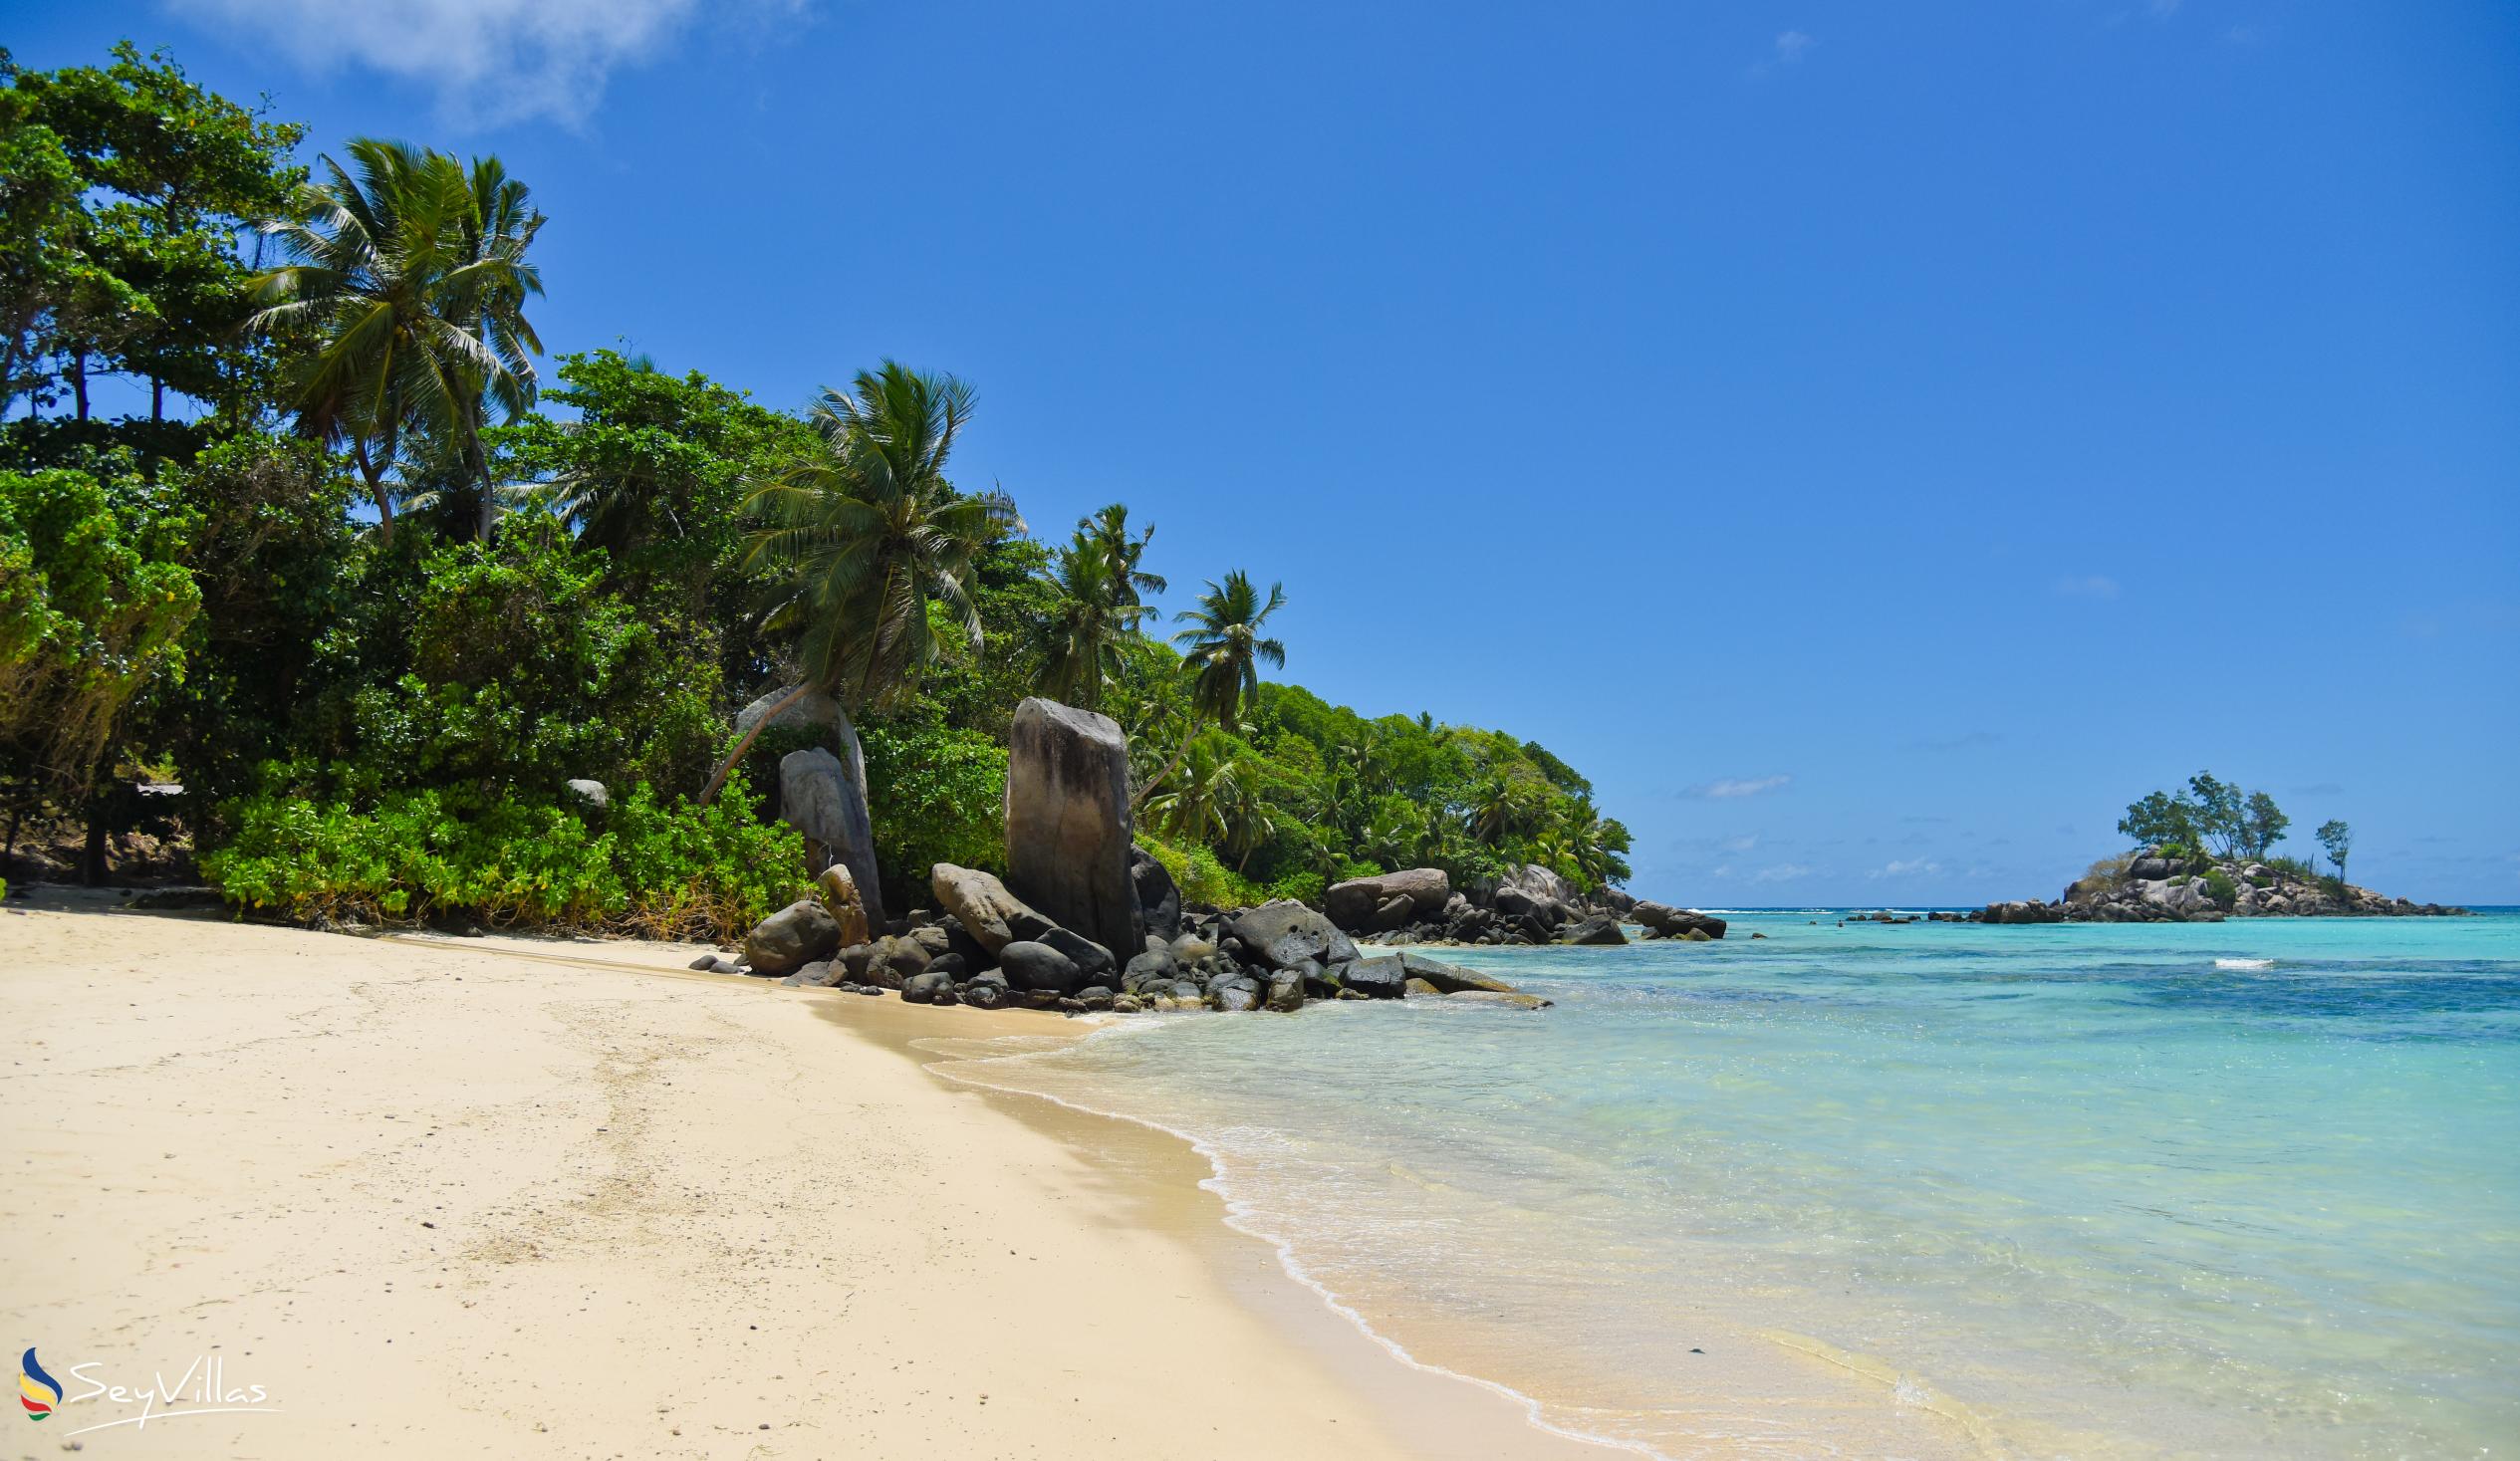 Photo 5: Fairyland Beach (Relax Beach) - Mahé (Seychelles)